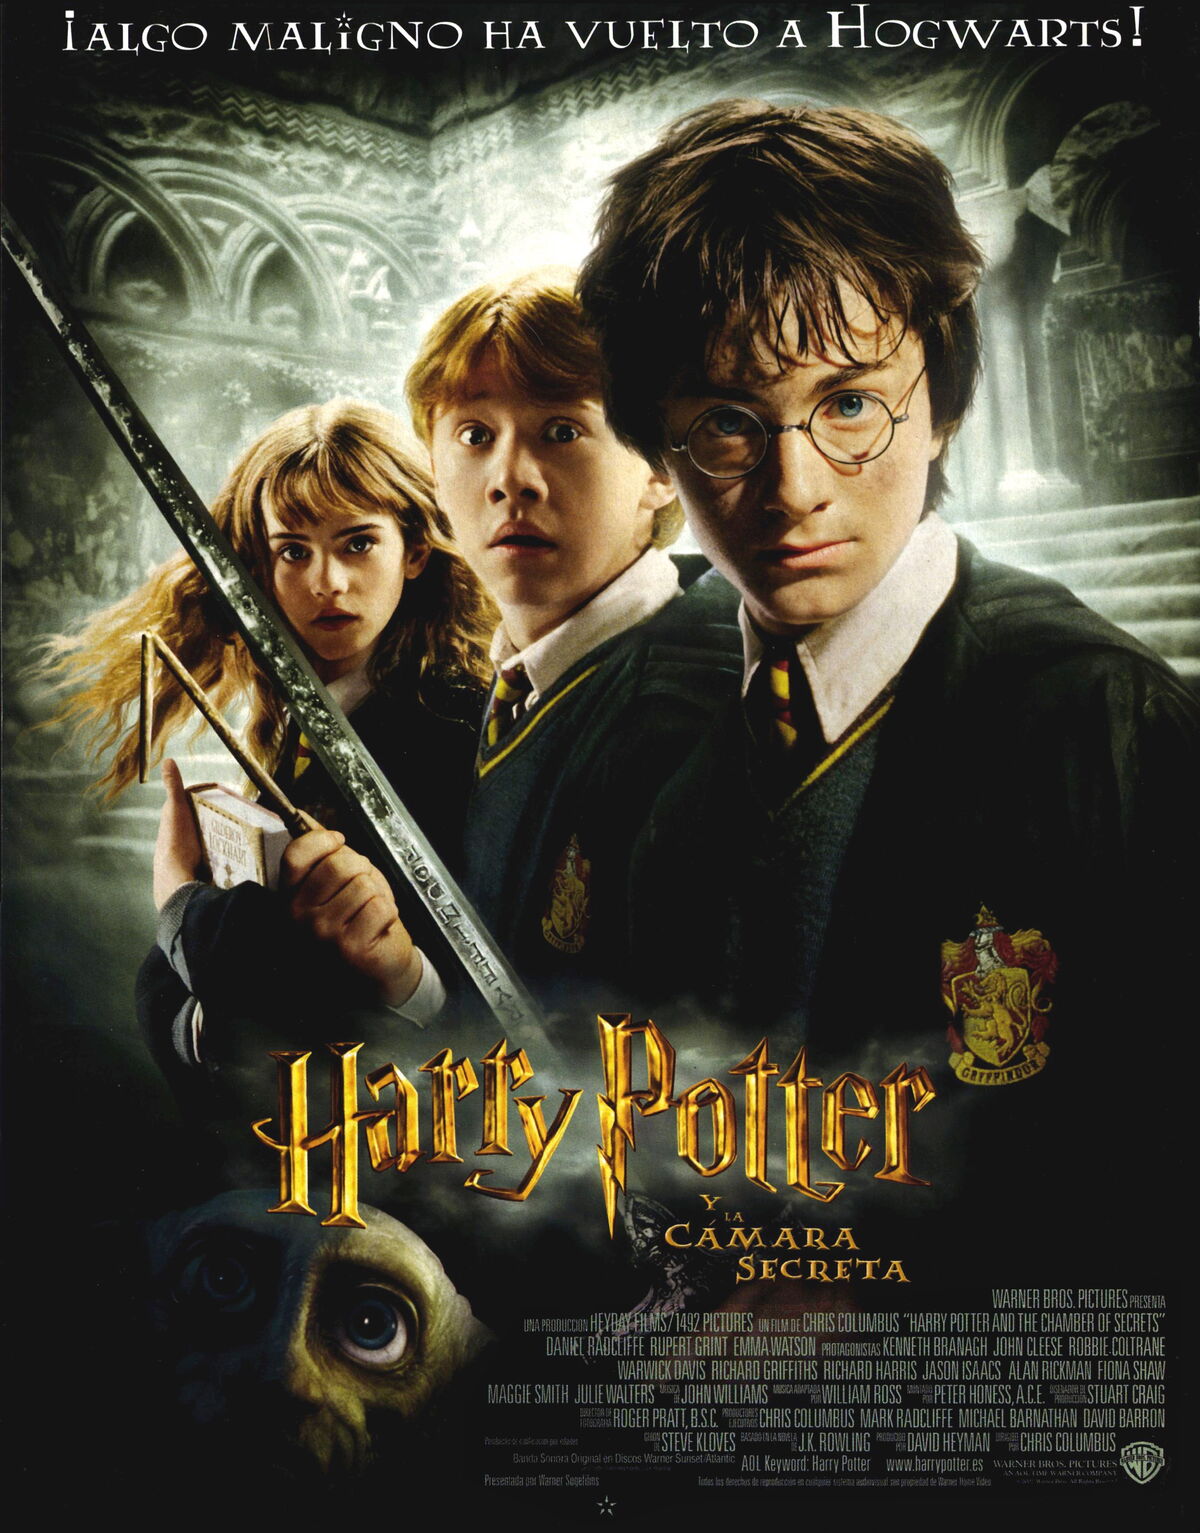 La referencia de Hogwarts Legacy a la película Harry Potter y la Cámara  Secreta - Meristation